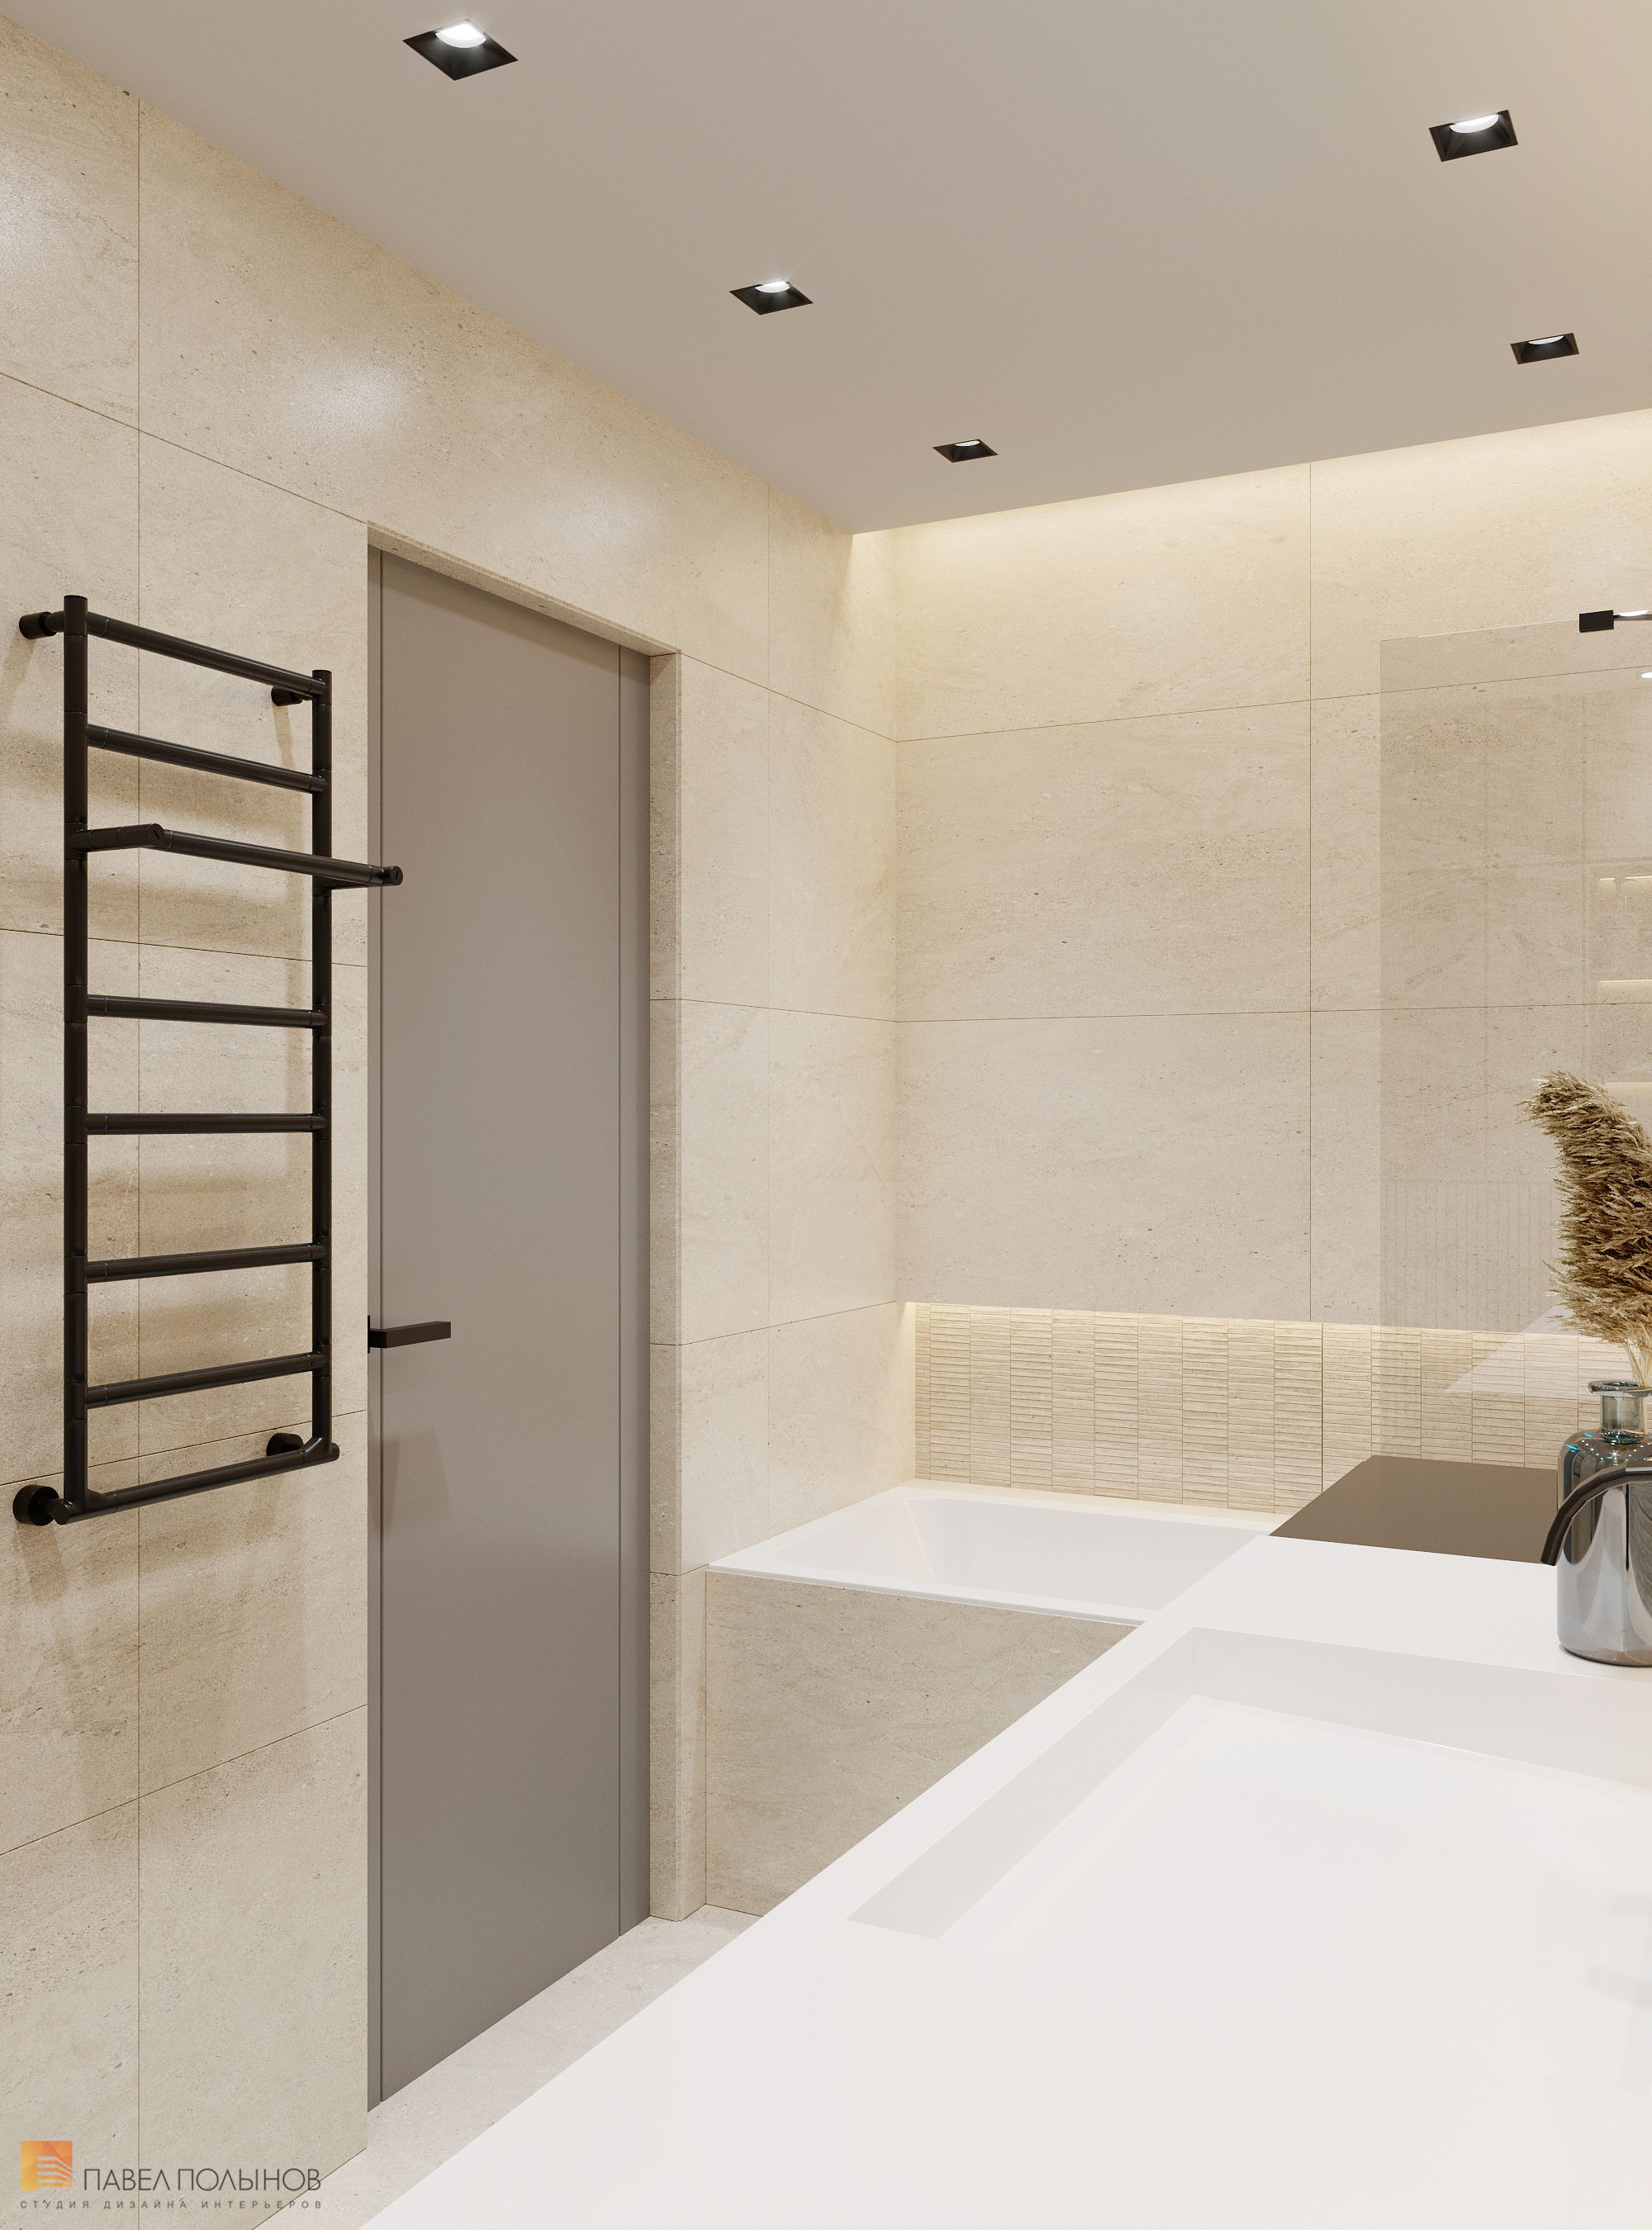 Фото дизайн интерьера ванной комнаты из проекта «ЖК BauHaus, 95 кв.м.»